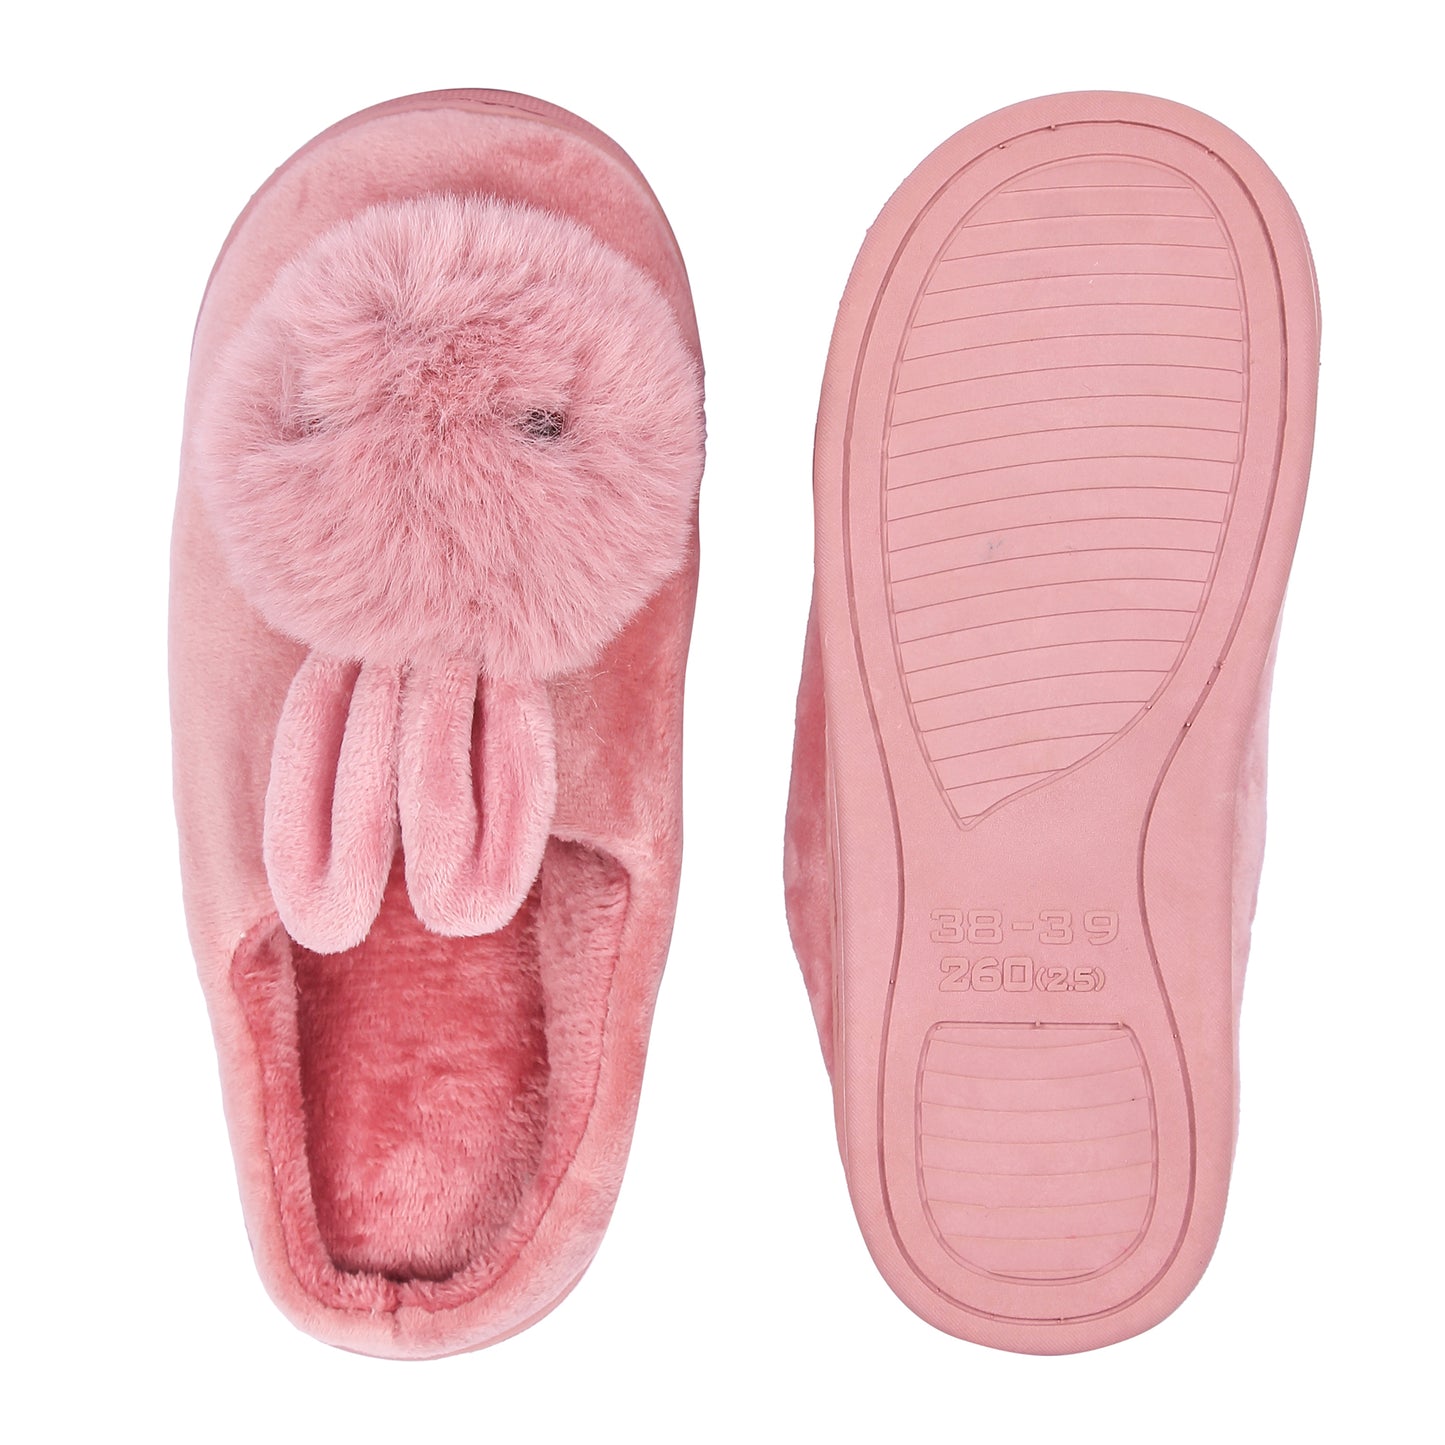 Brauch Women's Pink Cute Rabbit Winter Slippers